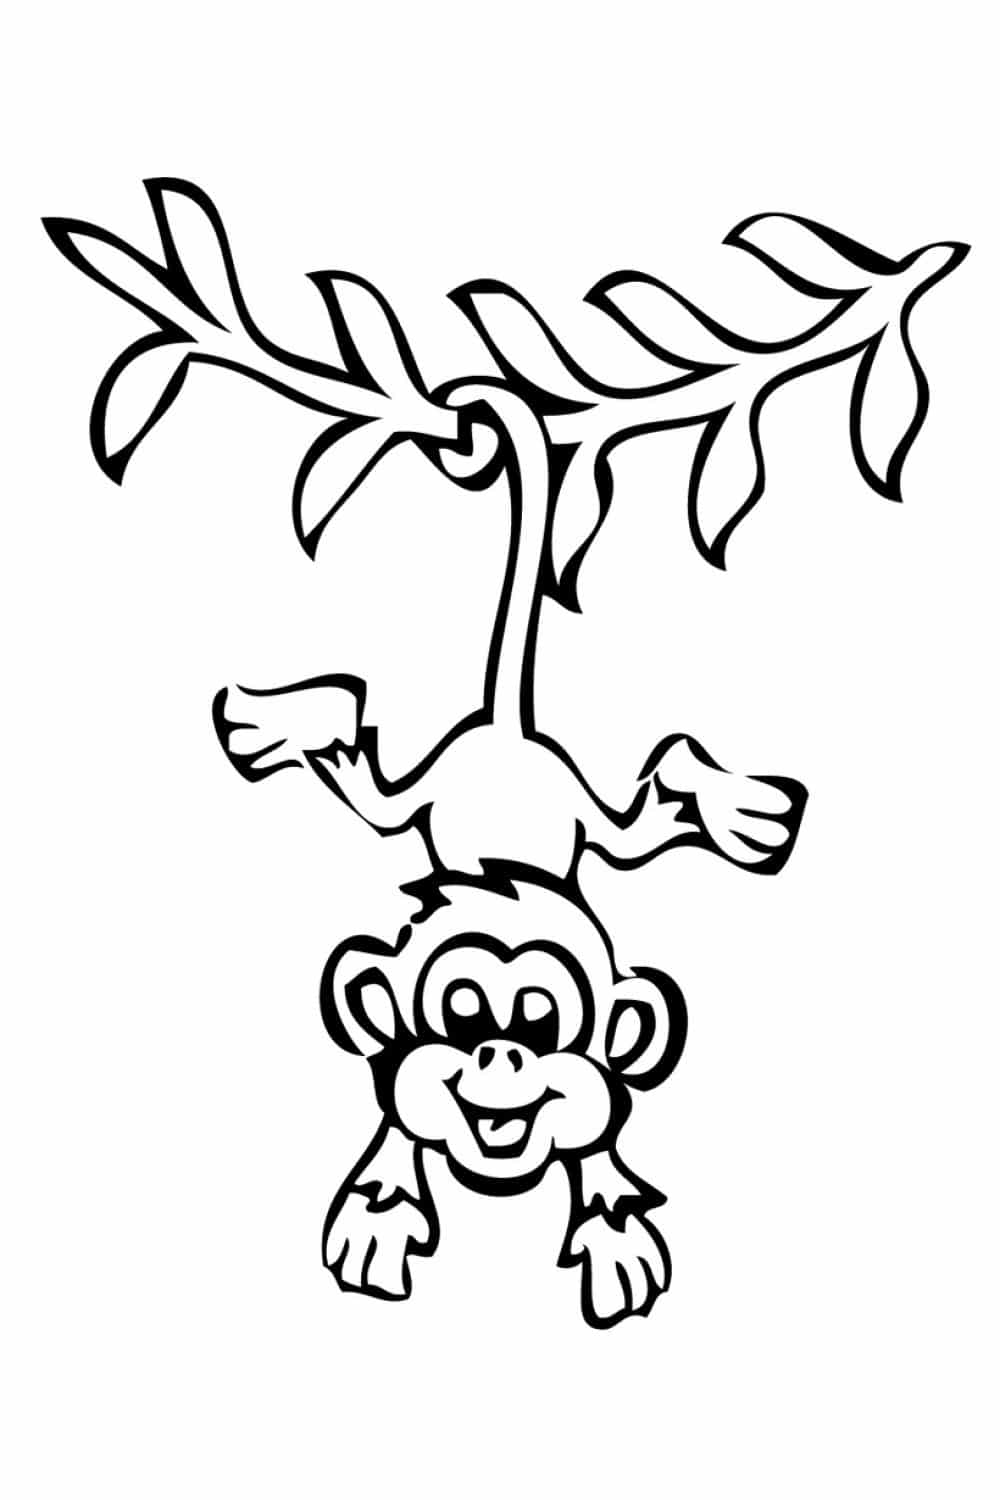 דף צביעה ציור לצביעה של קוף תלוי על עץ בזנבו